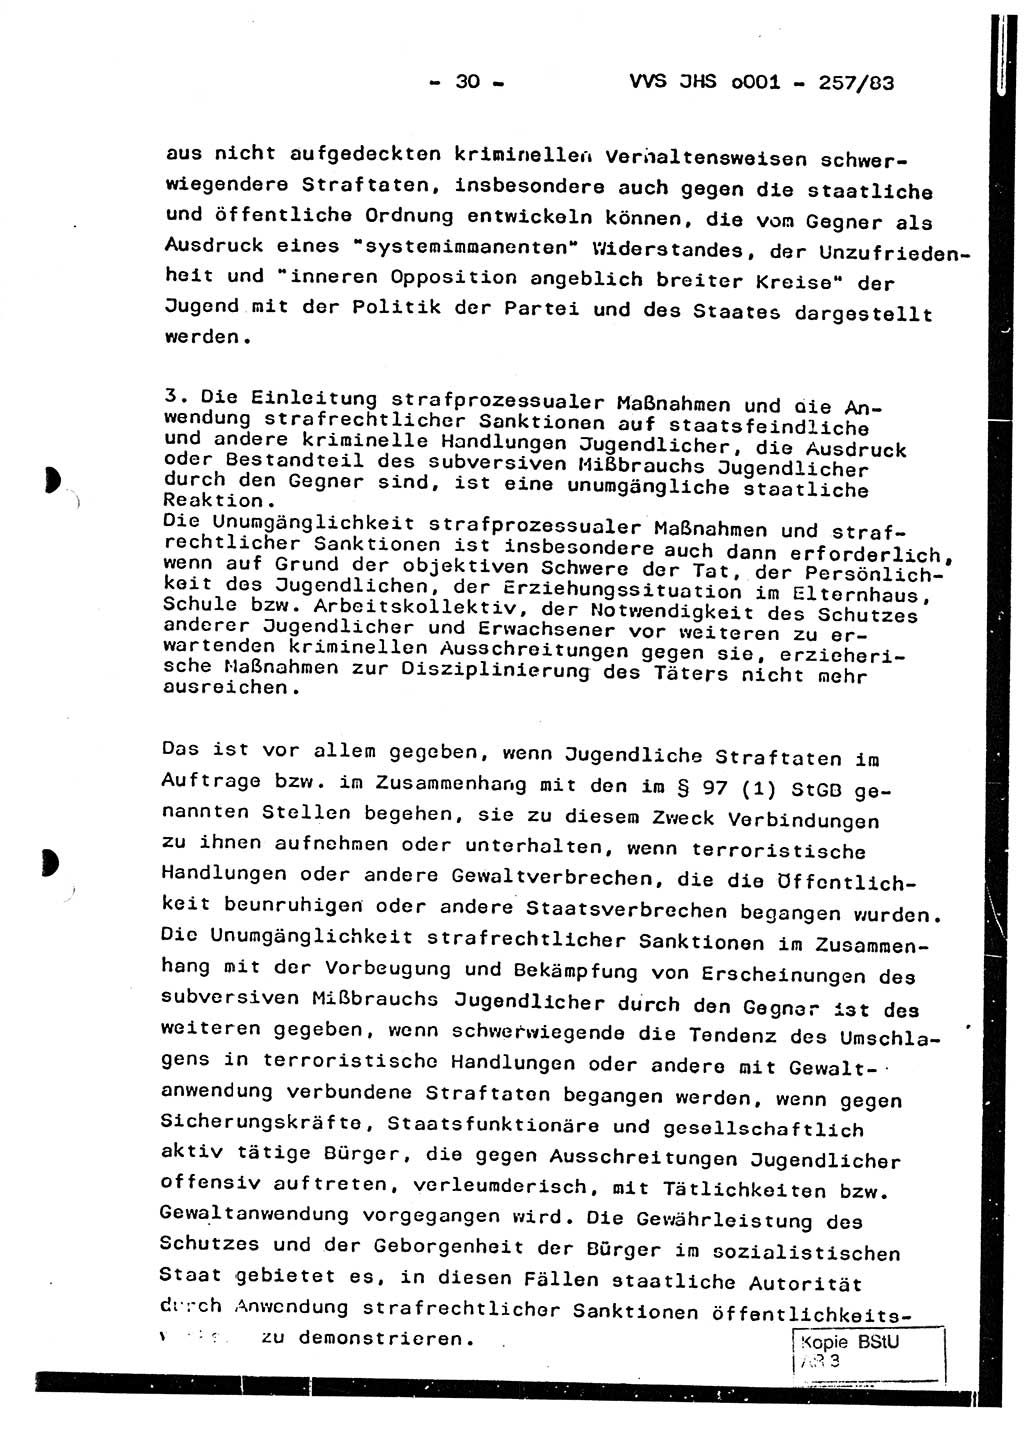 Dissertation, Oberst Helmut Lubas (BV Mdg.), Oberstleutnant Manfred Eschberger (HA IX), Oberleutnant Hans-Jürgen Ludwig (JHS), Ministerium für Staatssicherheit (MfS) [Deutsche Demokratische Republik (DDR)], Juristische Hochschule (JHS), Vertrauliche Verschlußsache (VVS) o001-257/83, Potsdam 1983, Seite 30 (Diss. MfS DDR JHS VVS o001-257/83 1983, S. 30)